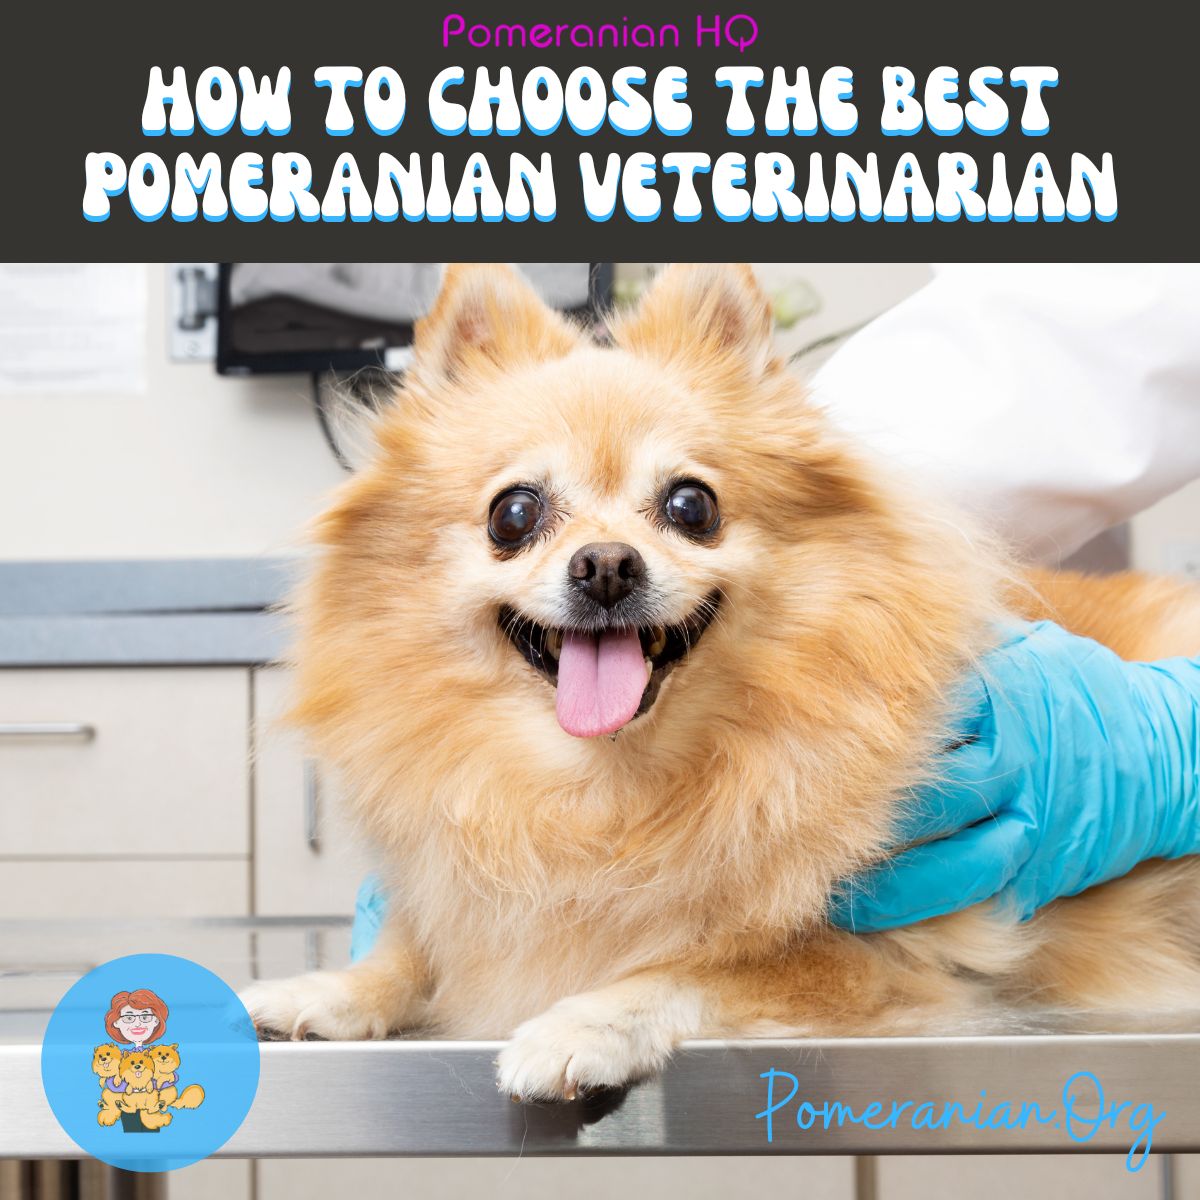 Pomeranian at Veterinarian